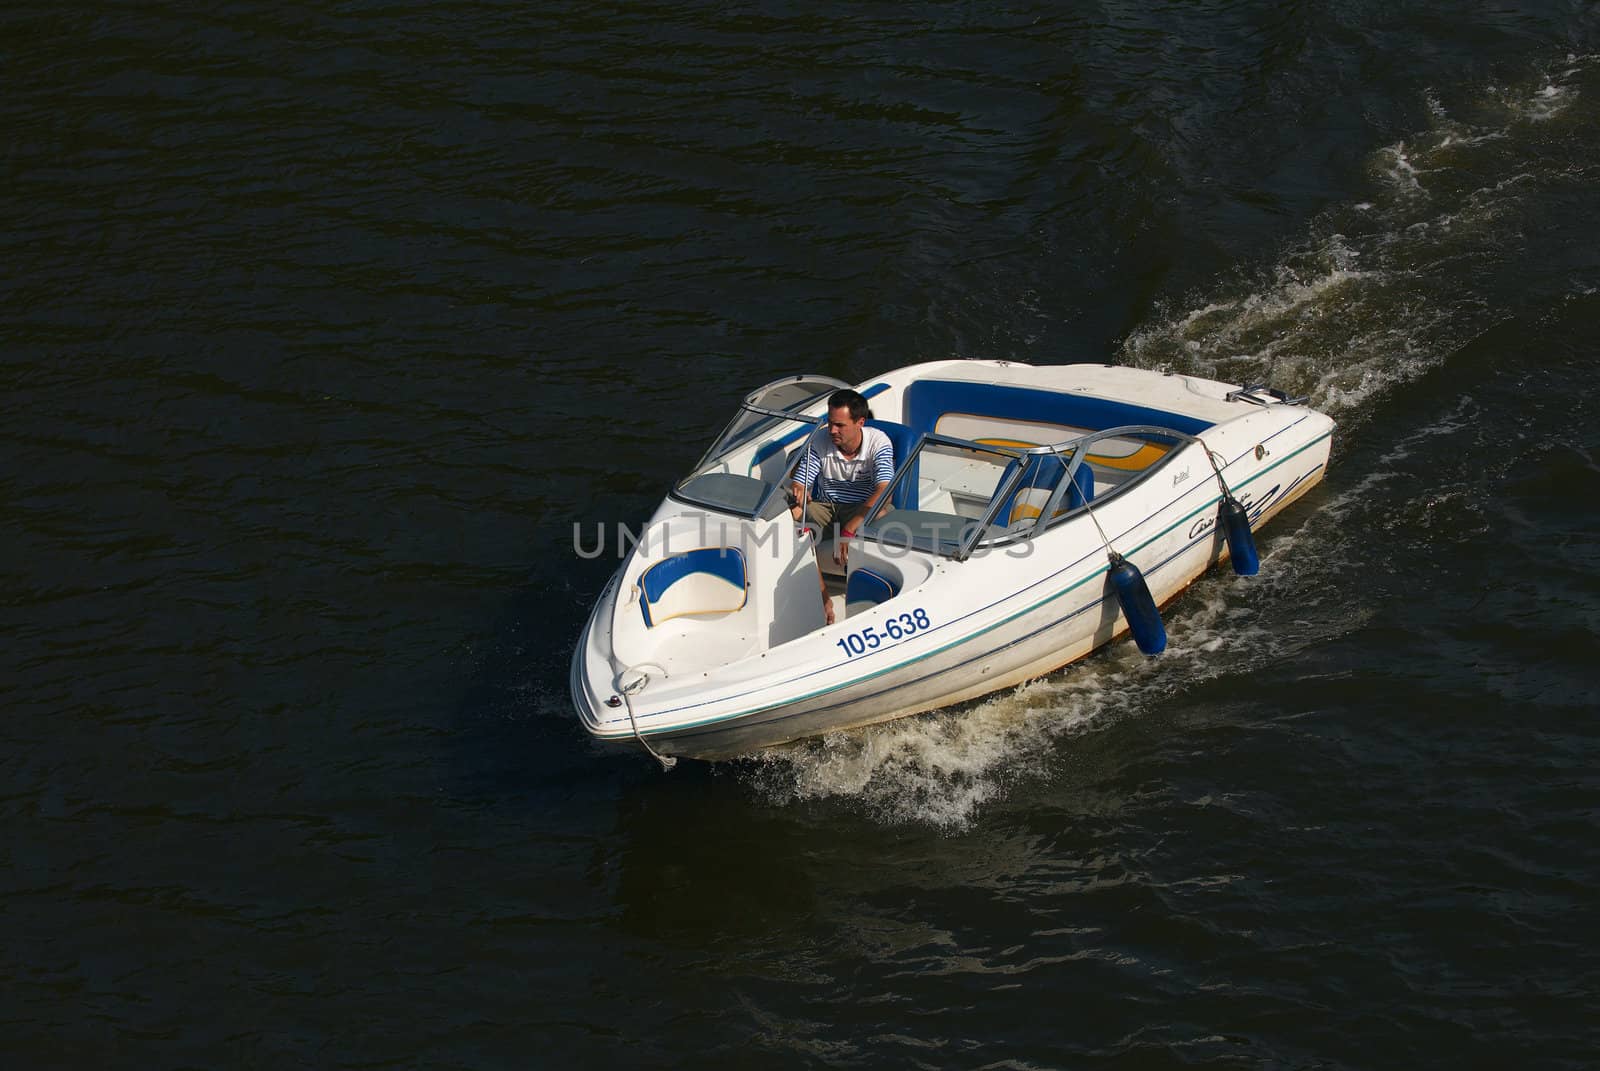 Speedboat cruising in the river